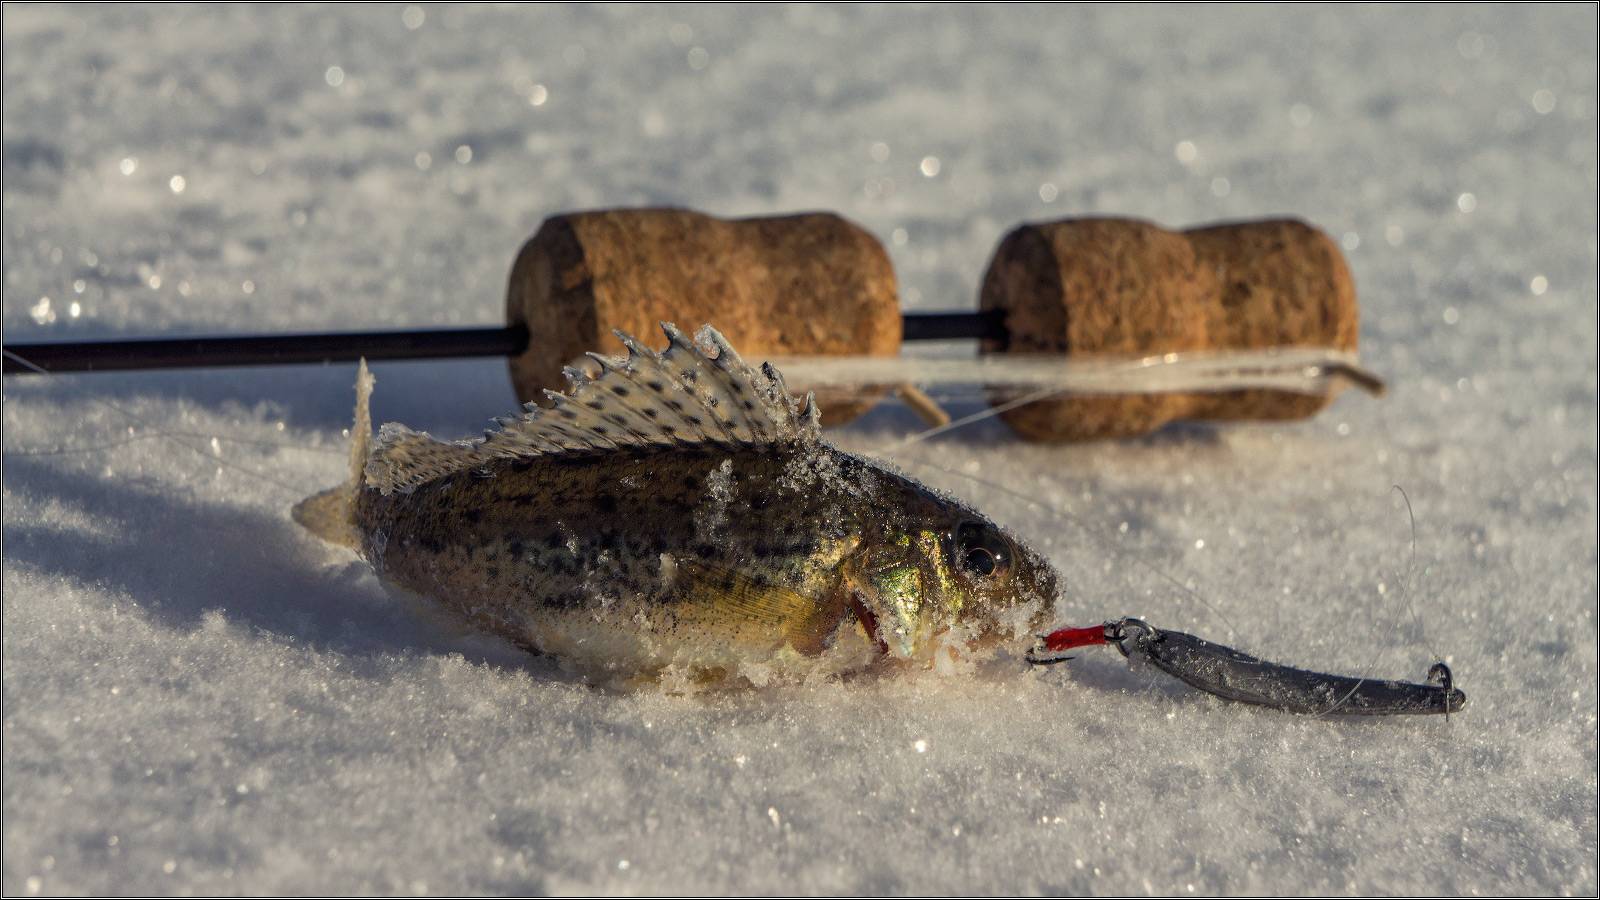 Всё о рыбалке в беларуси: гид по рыбной ловле 2019 - visit belarus